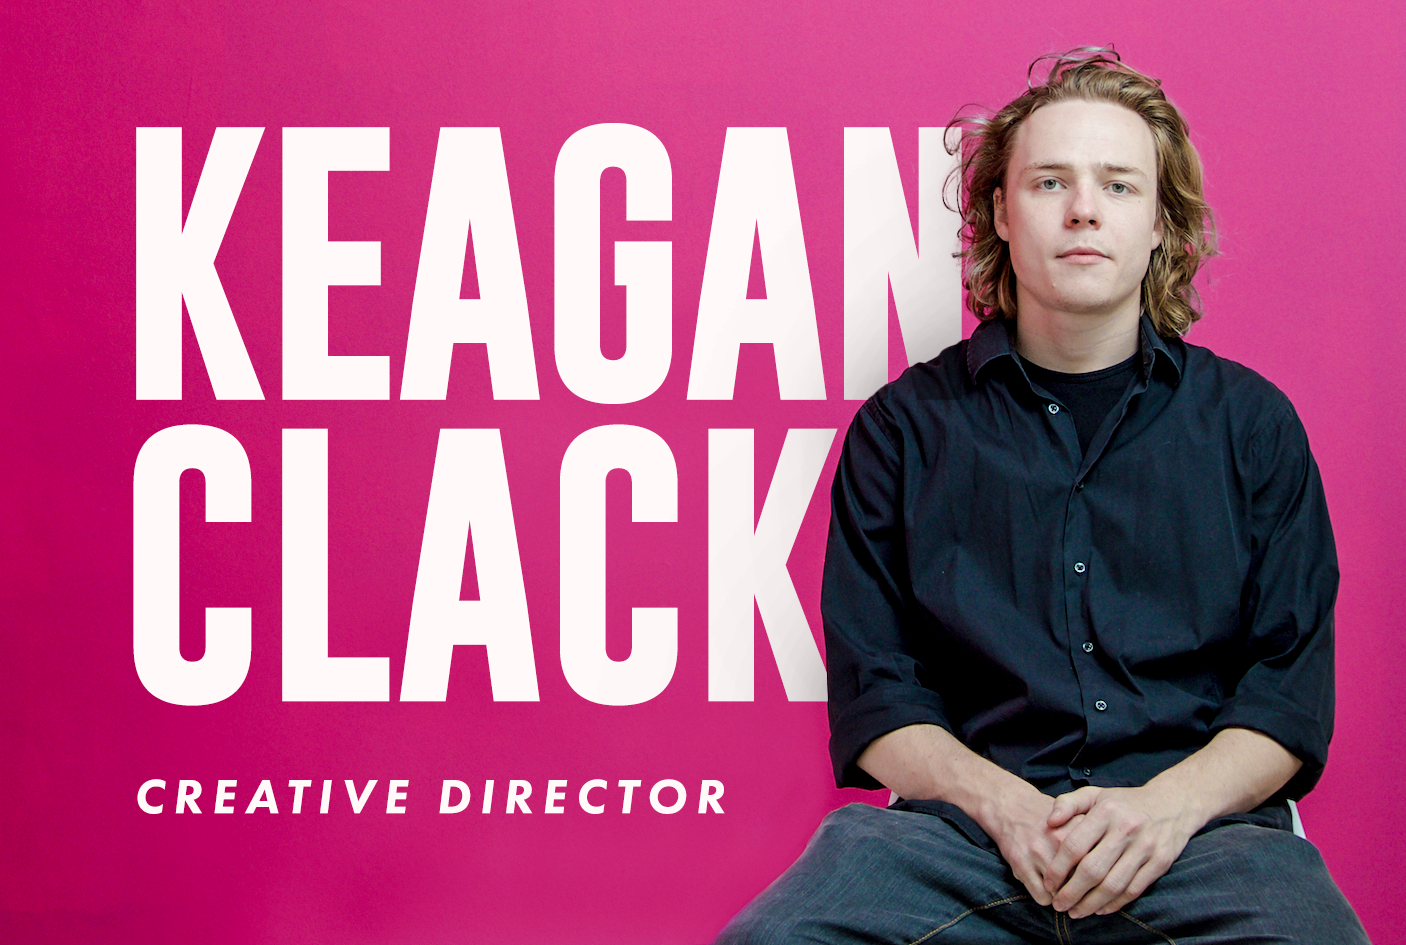 Jumpin' the Gun Creative Director Keagan Clack